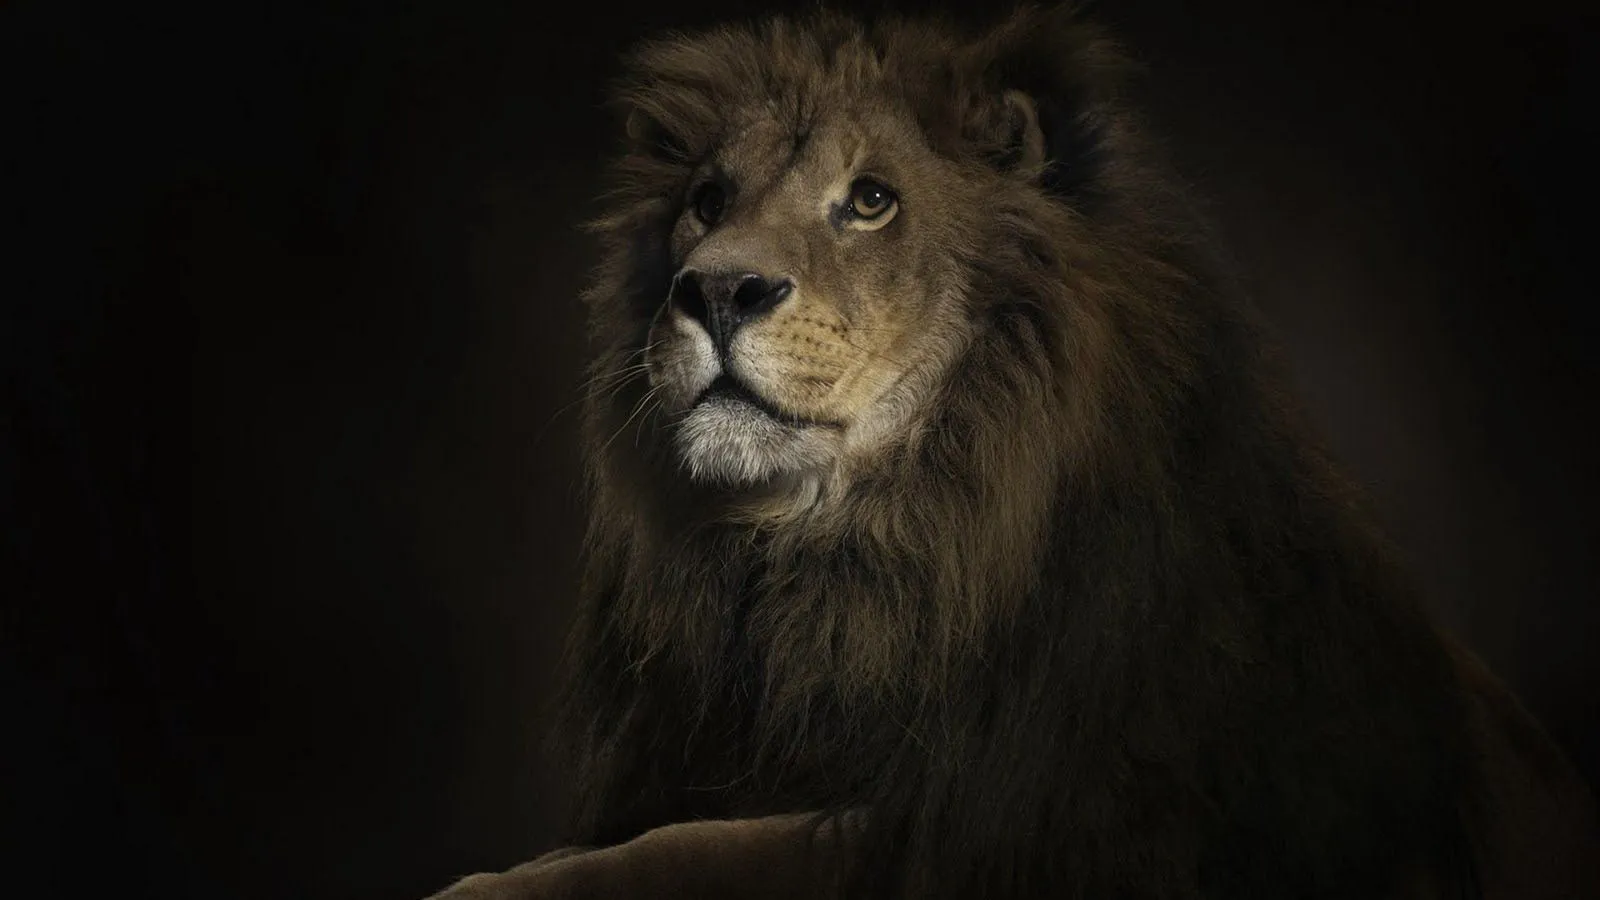 wallpapers de leones en HD | DragonXoft